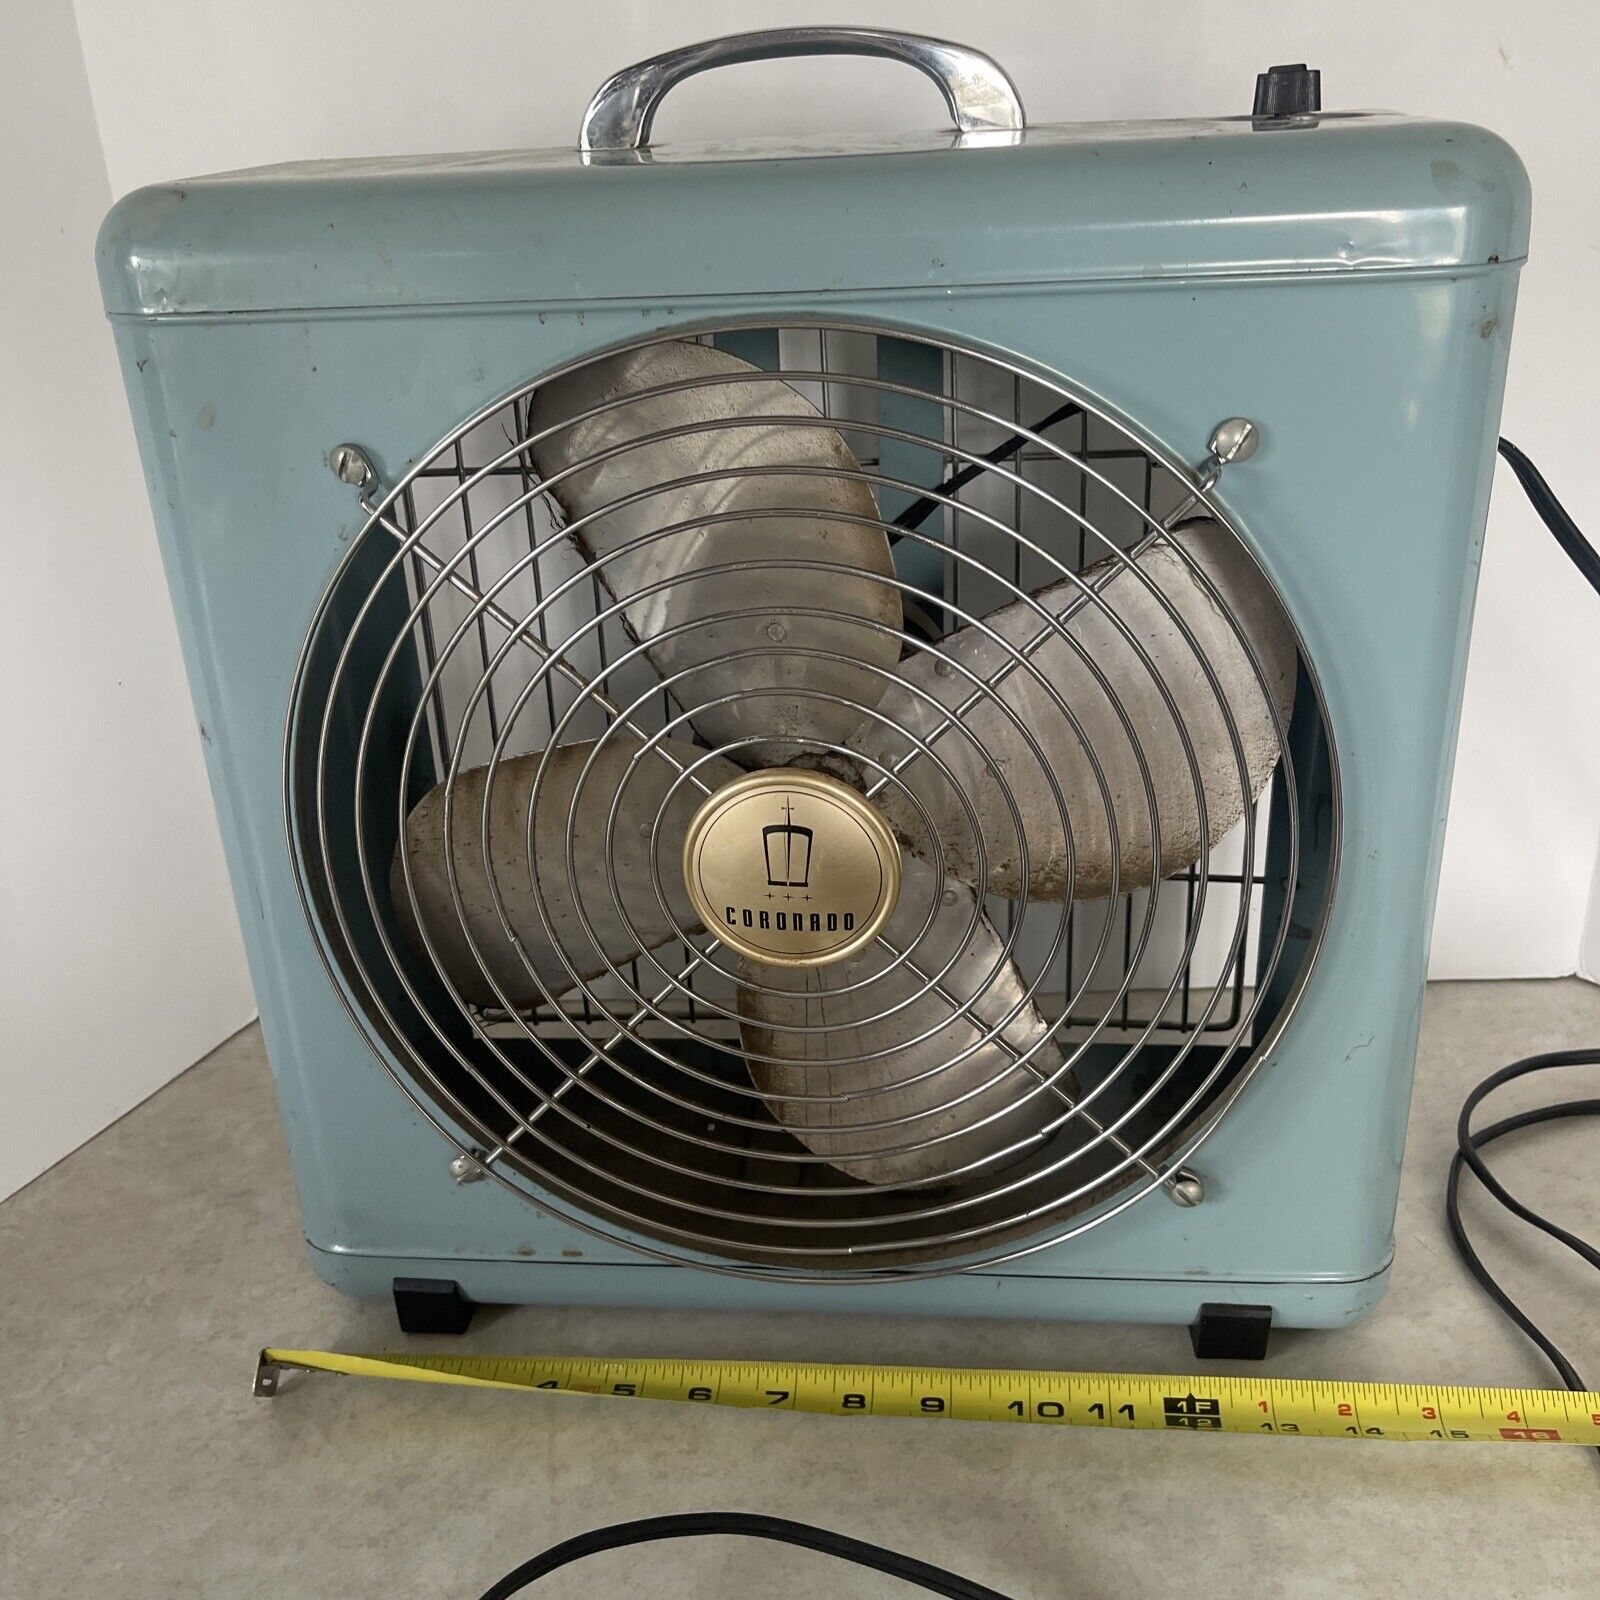 Vintage Coronado Hw23a-1005 Box Fan Baby Blue 15” X 15” 3 Speed Works Very Loud